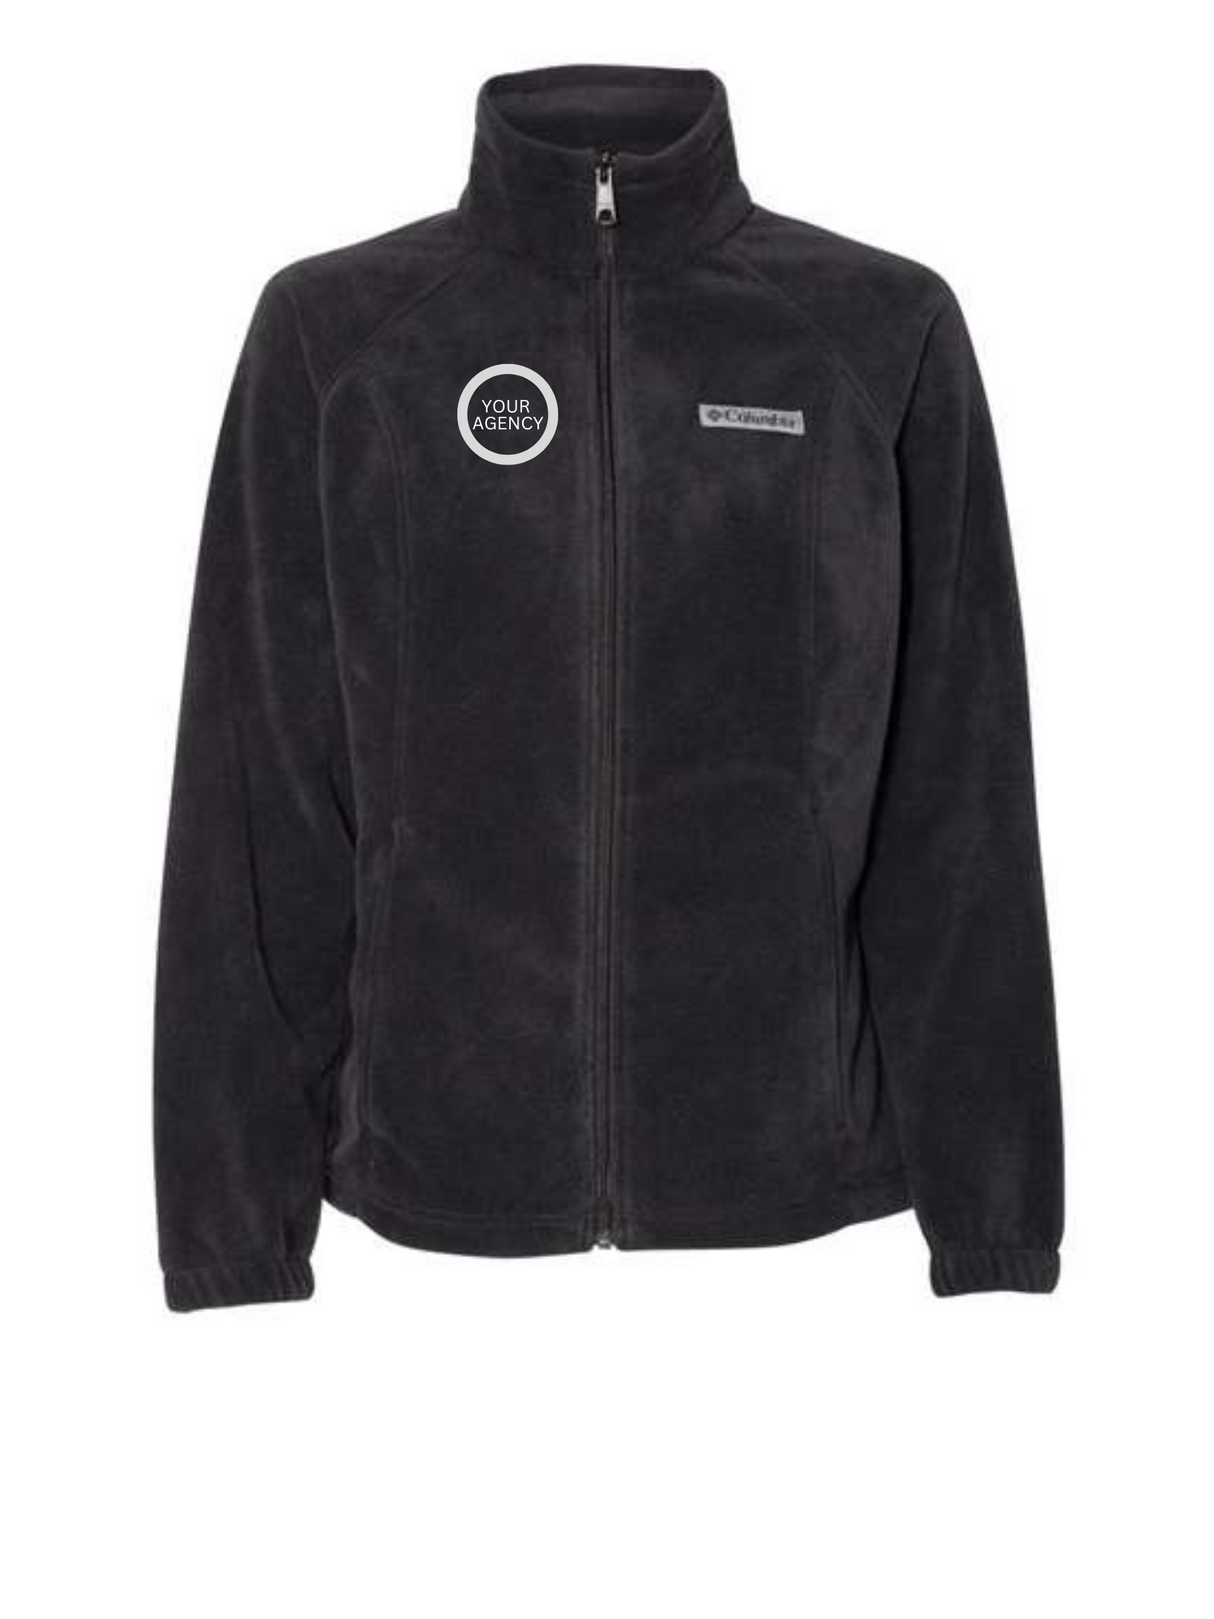 Women’s Benton Springs™ Fleece Full-Zip Jacket